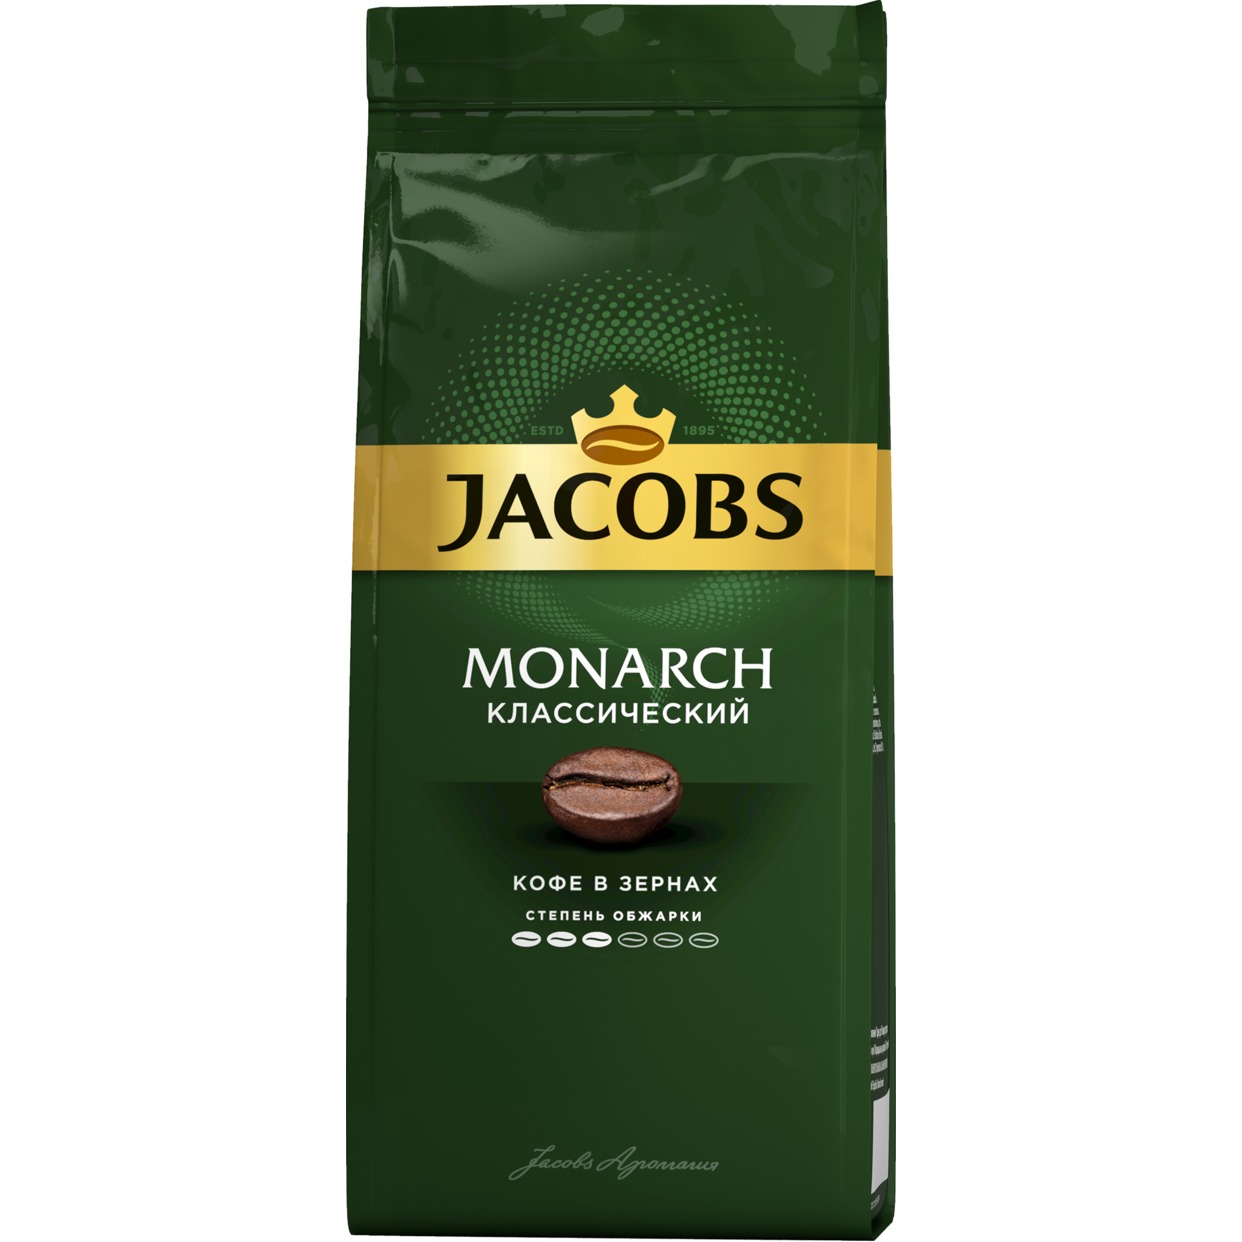 ЯКОБС МОНАРХ Классический кофе жареный зерна пакет 9х230 г по акции в Пятерочке